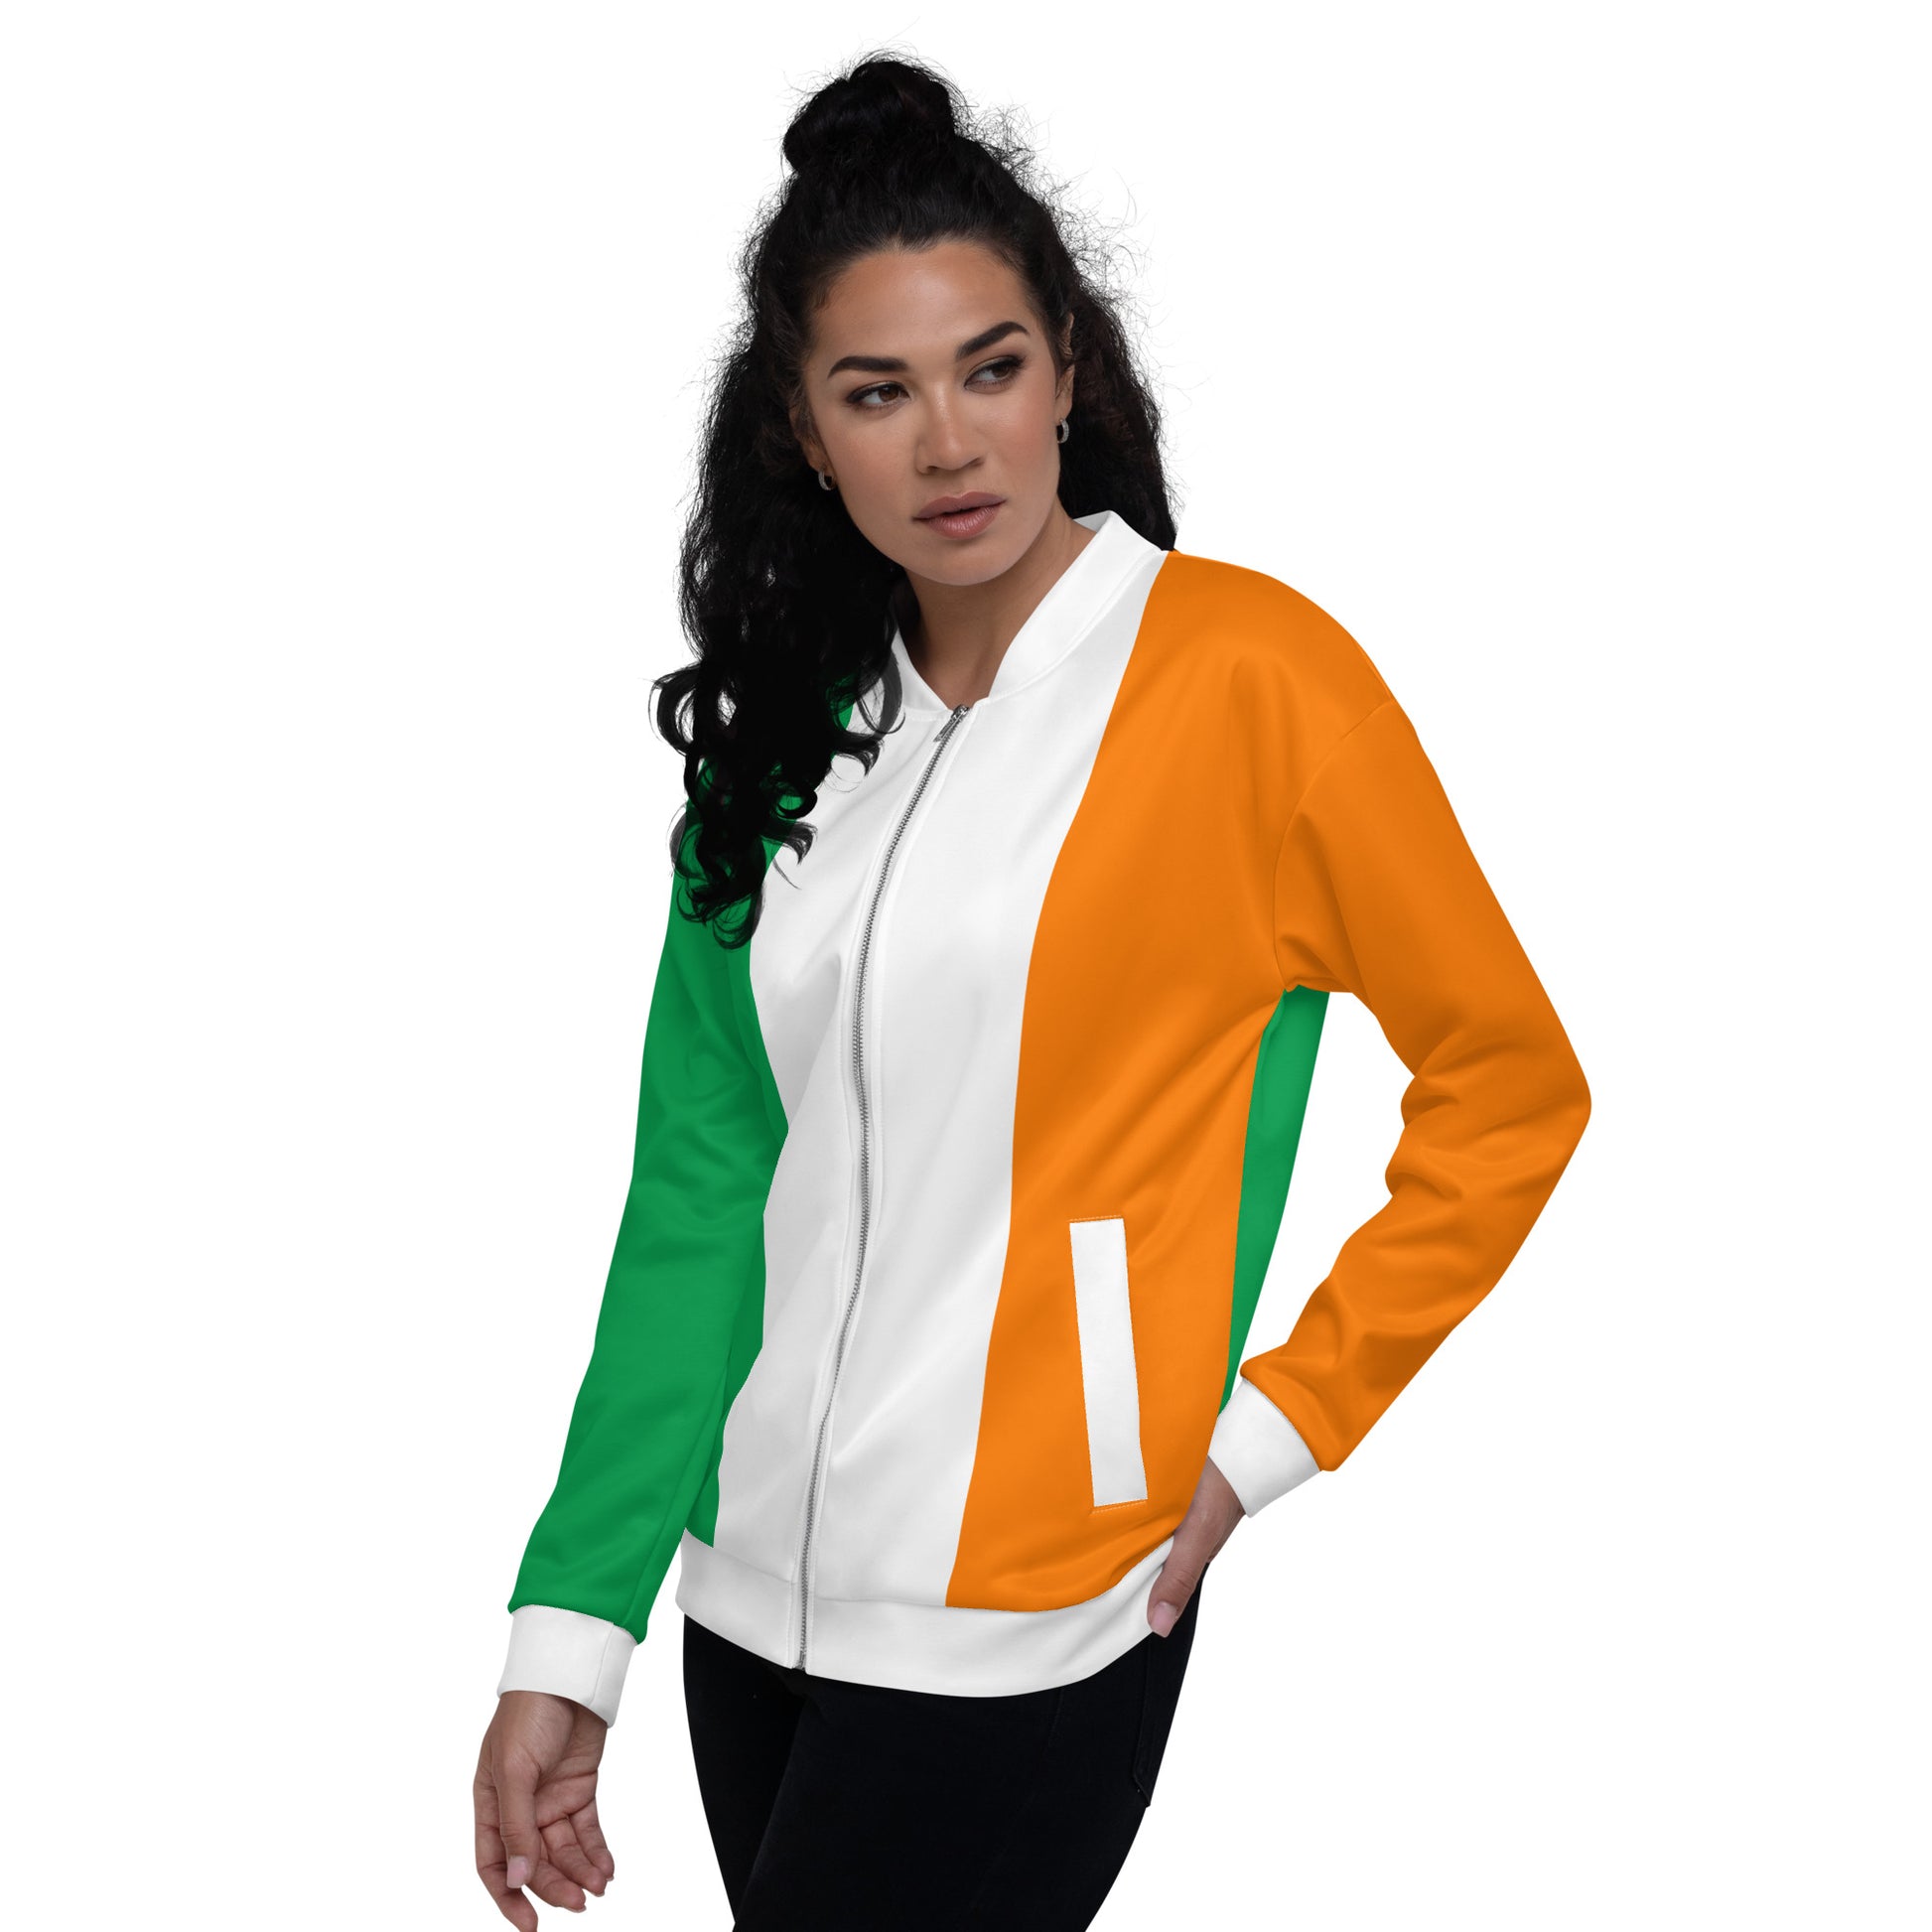 Irish Jacket / Unisex Bomber Jacket With Colors Of The Ireland Flag